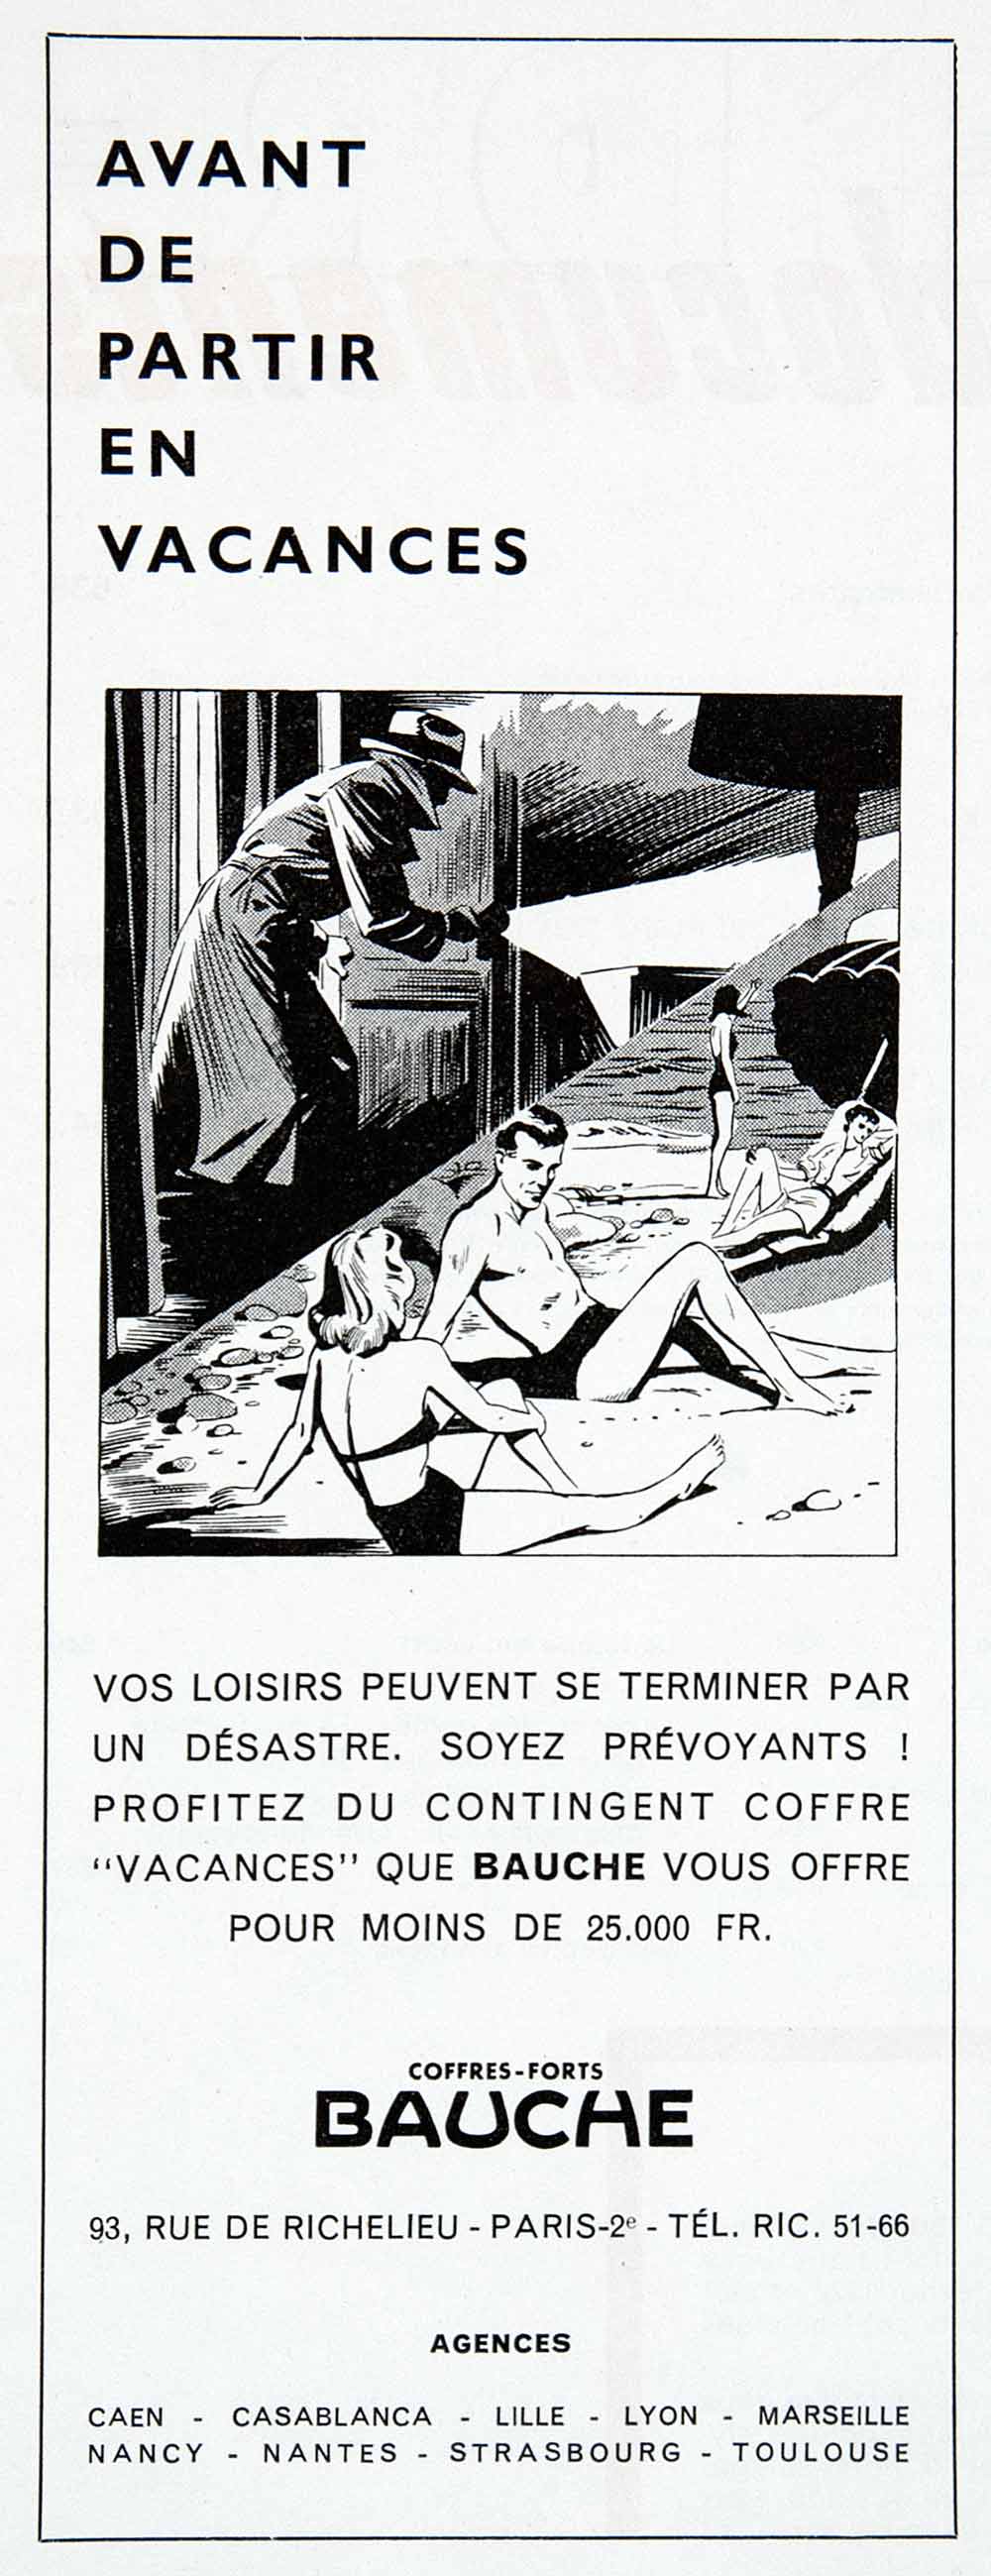 1955 Ad Bauche Sunbathing Safe Coffres-Forts Rue Richelieu Paris France VEN2